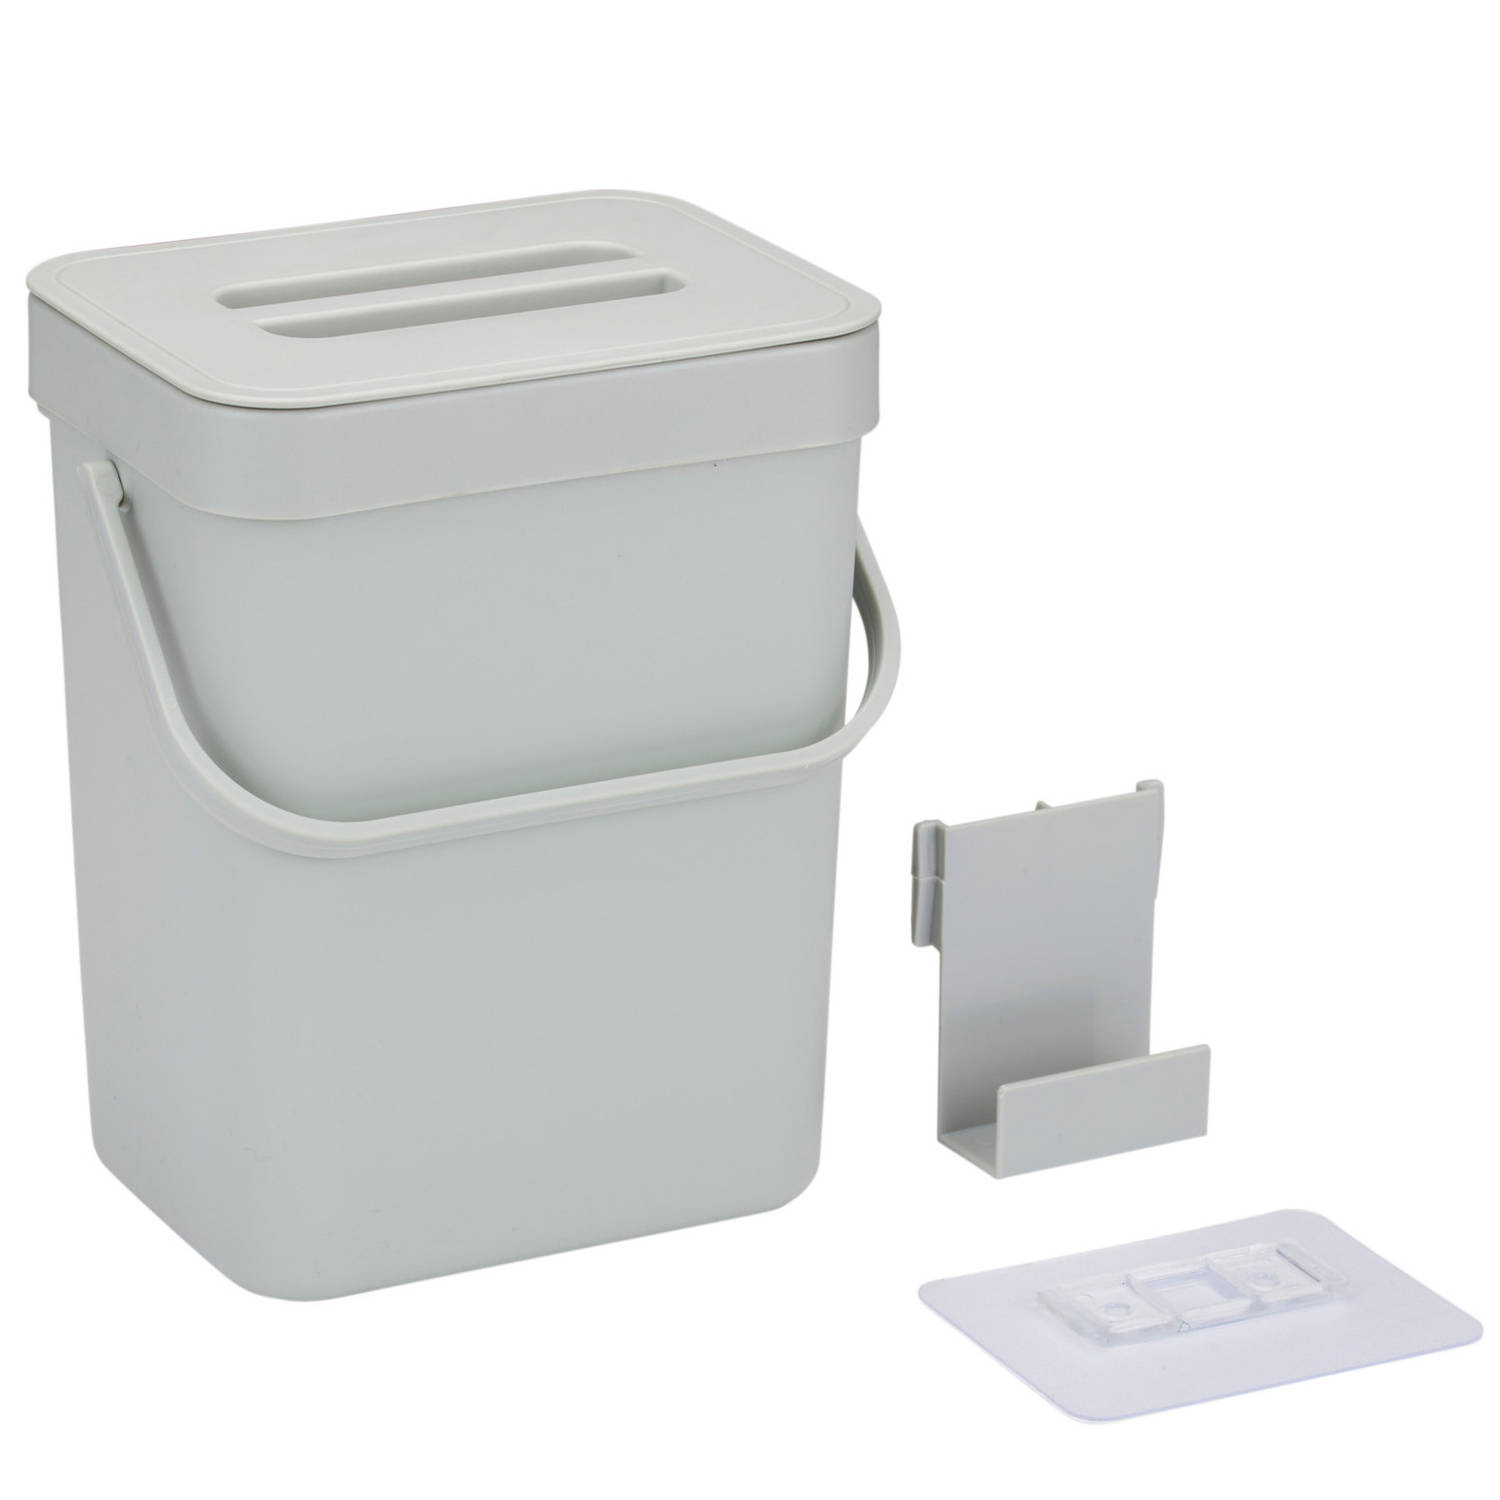 Gft afvalbakje voor aanrecht of aan keuken kastje 5L grijs afsluitbaar 24 x 19 x 14 cm Prullenbakken